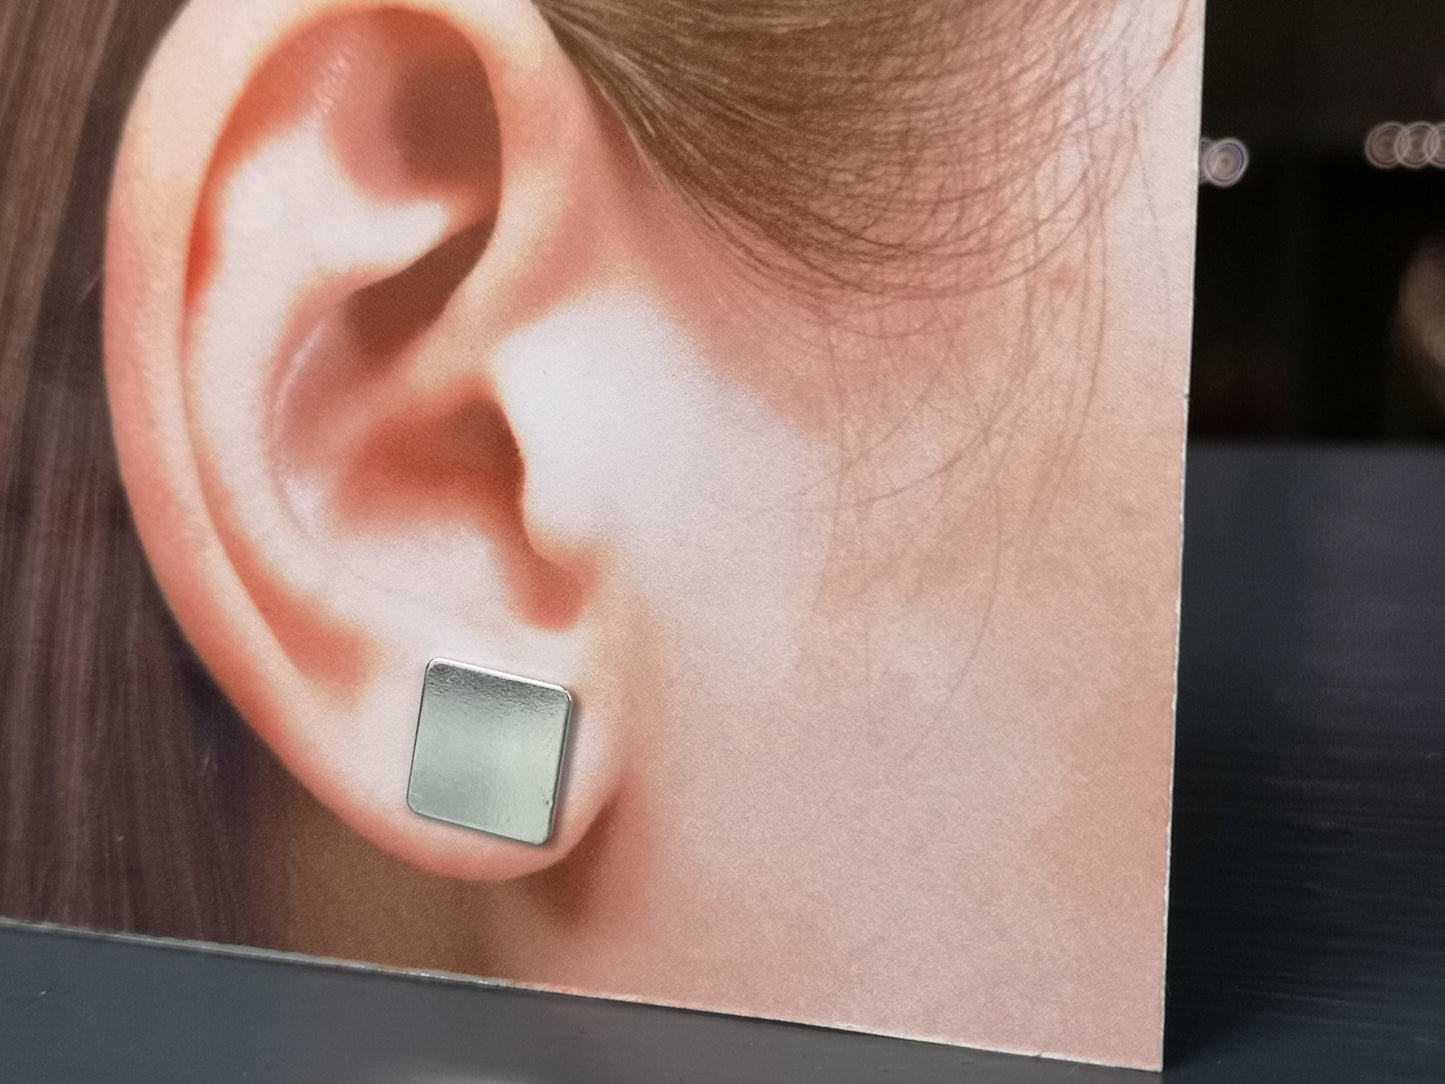 Storrutan, 10*10 mm square stud earrings